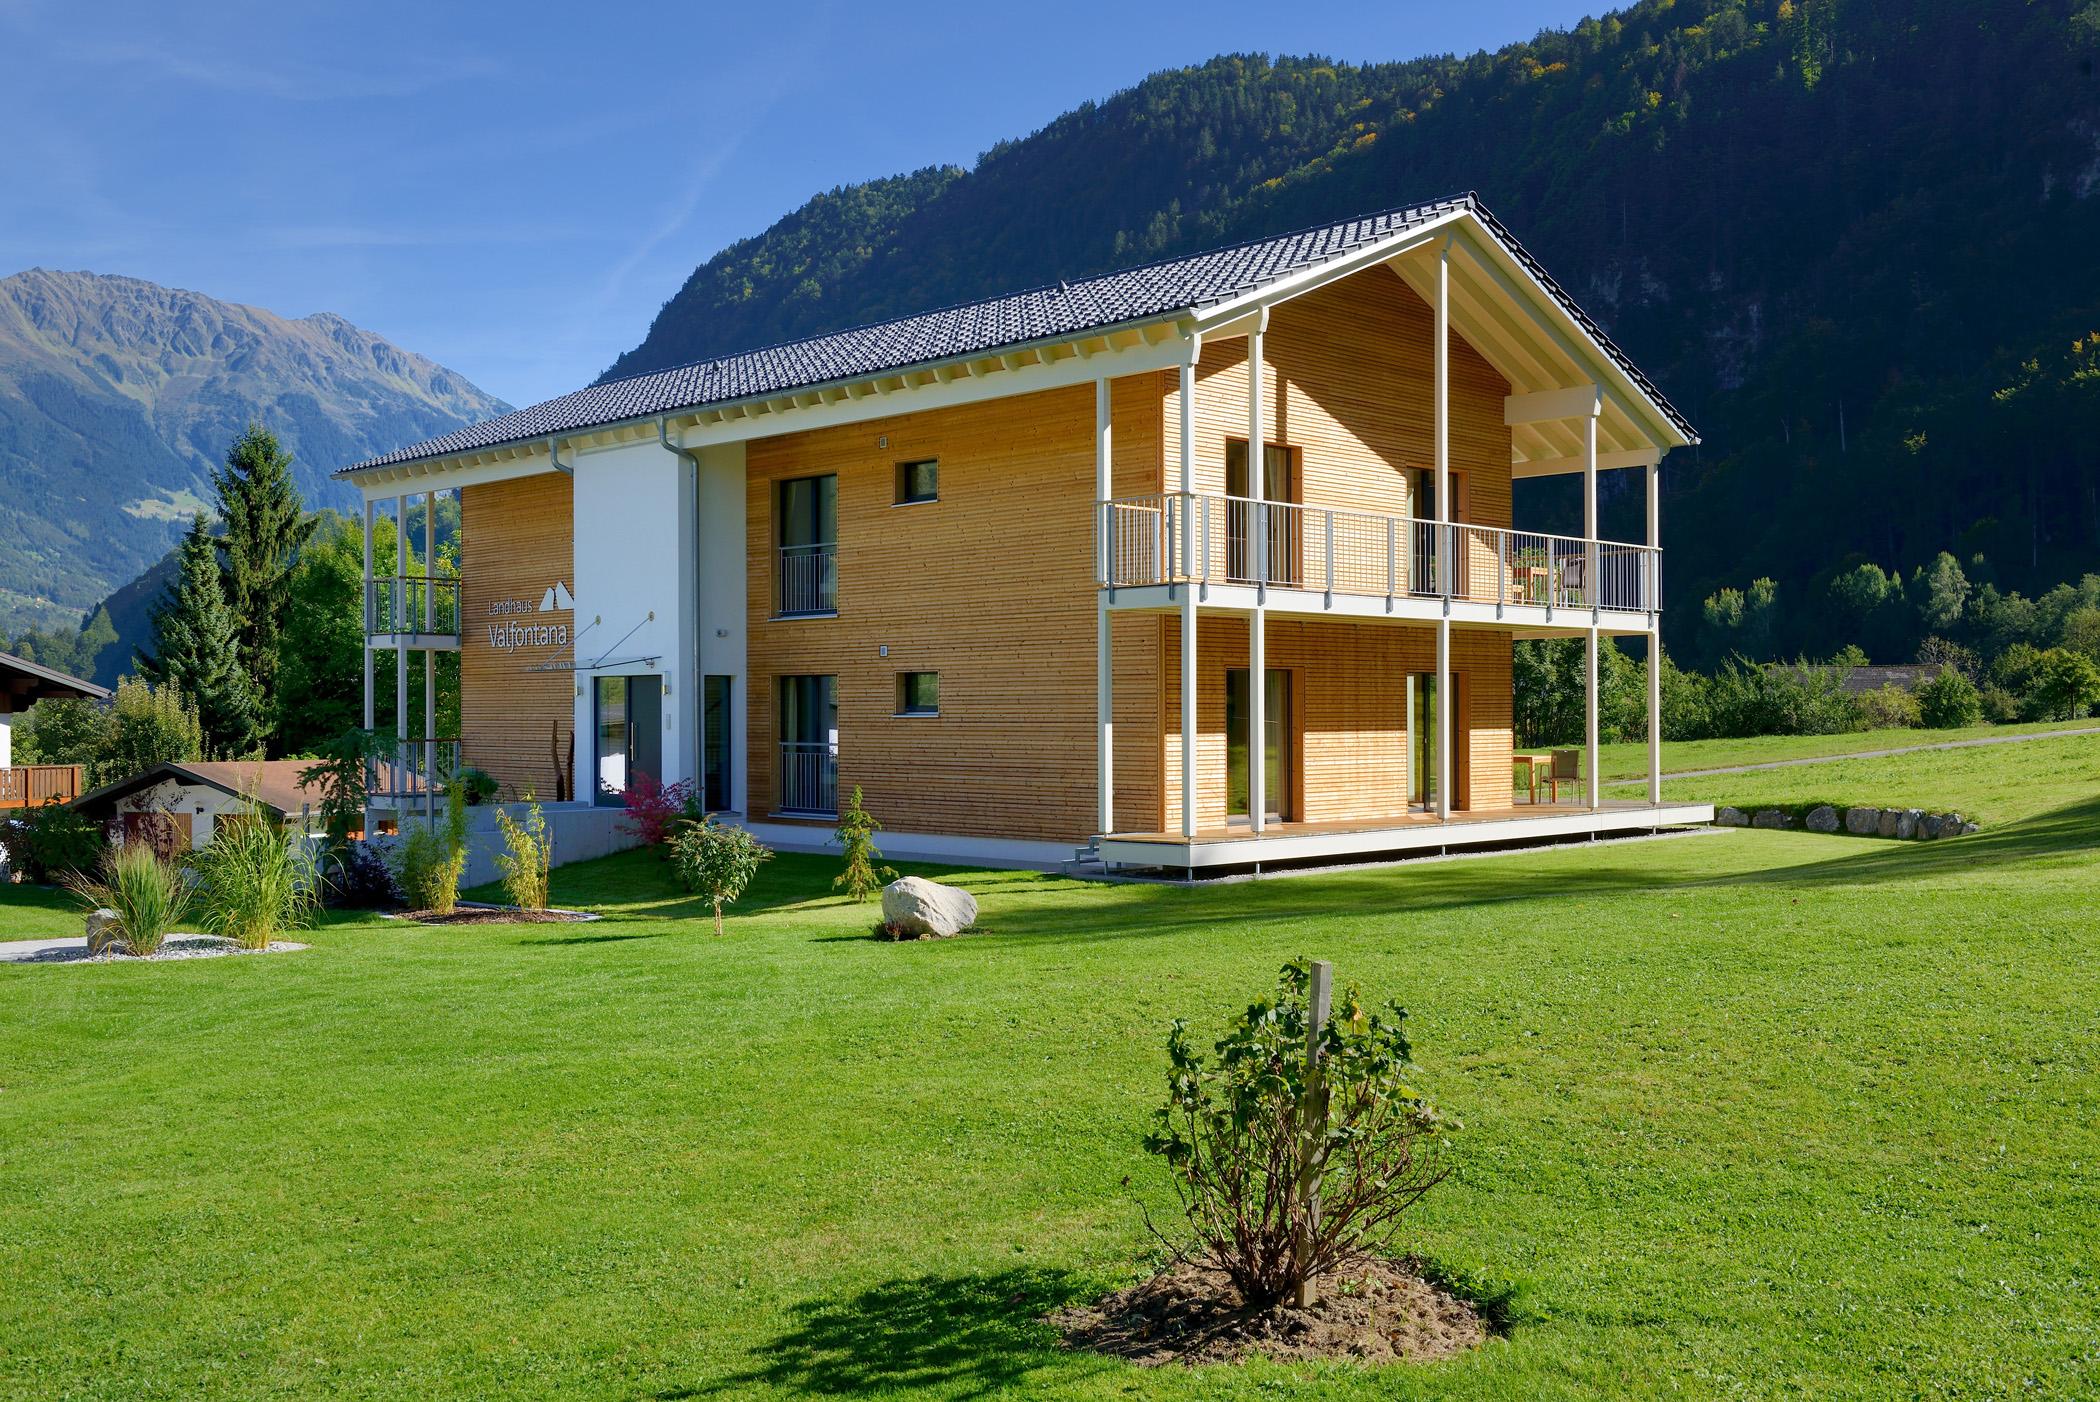 Haus Volfantana #terrasse #holzfassade #ferienwohnung ©Baufritz GmbH & Co. KG